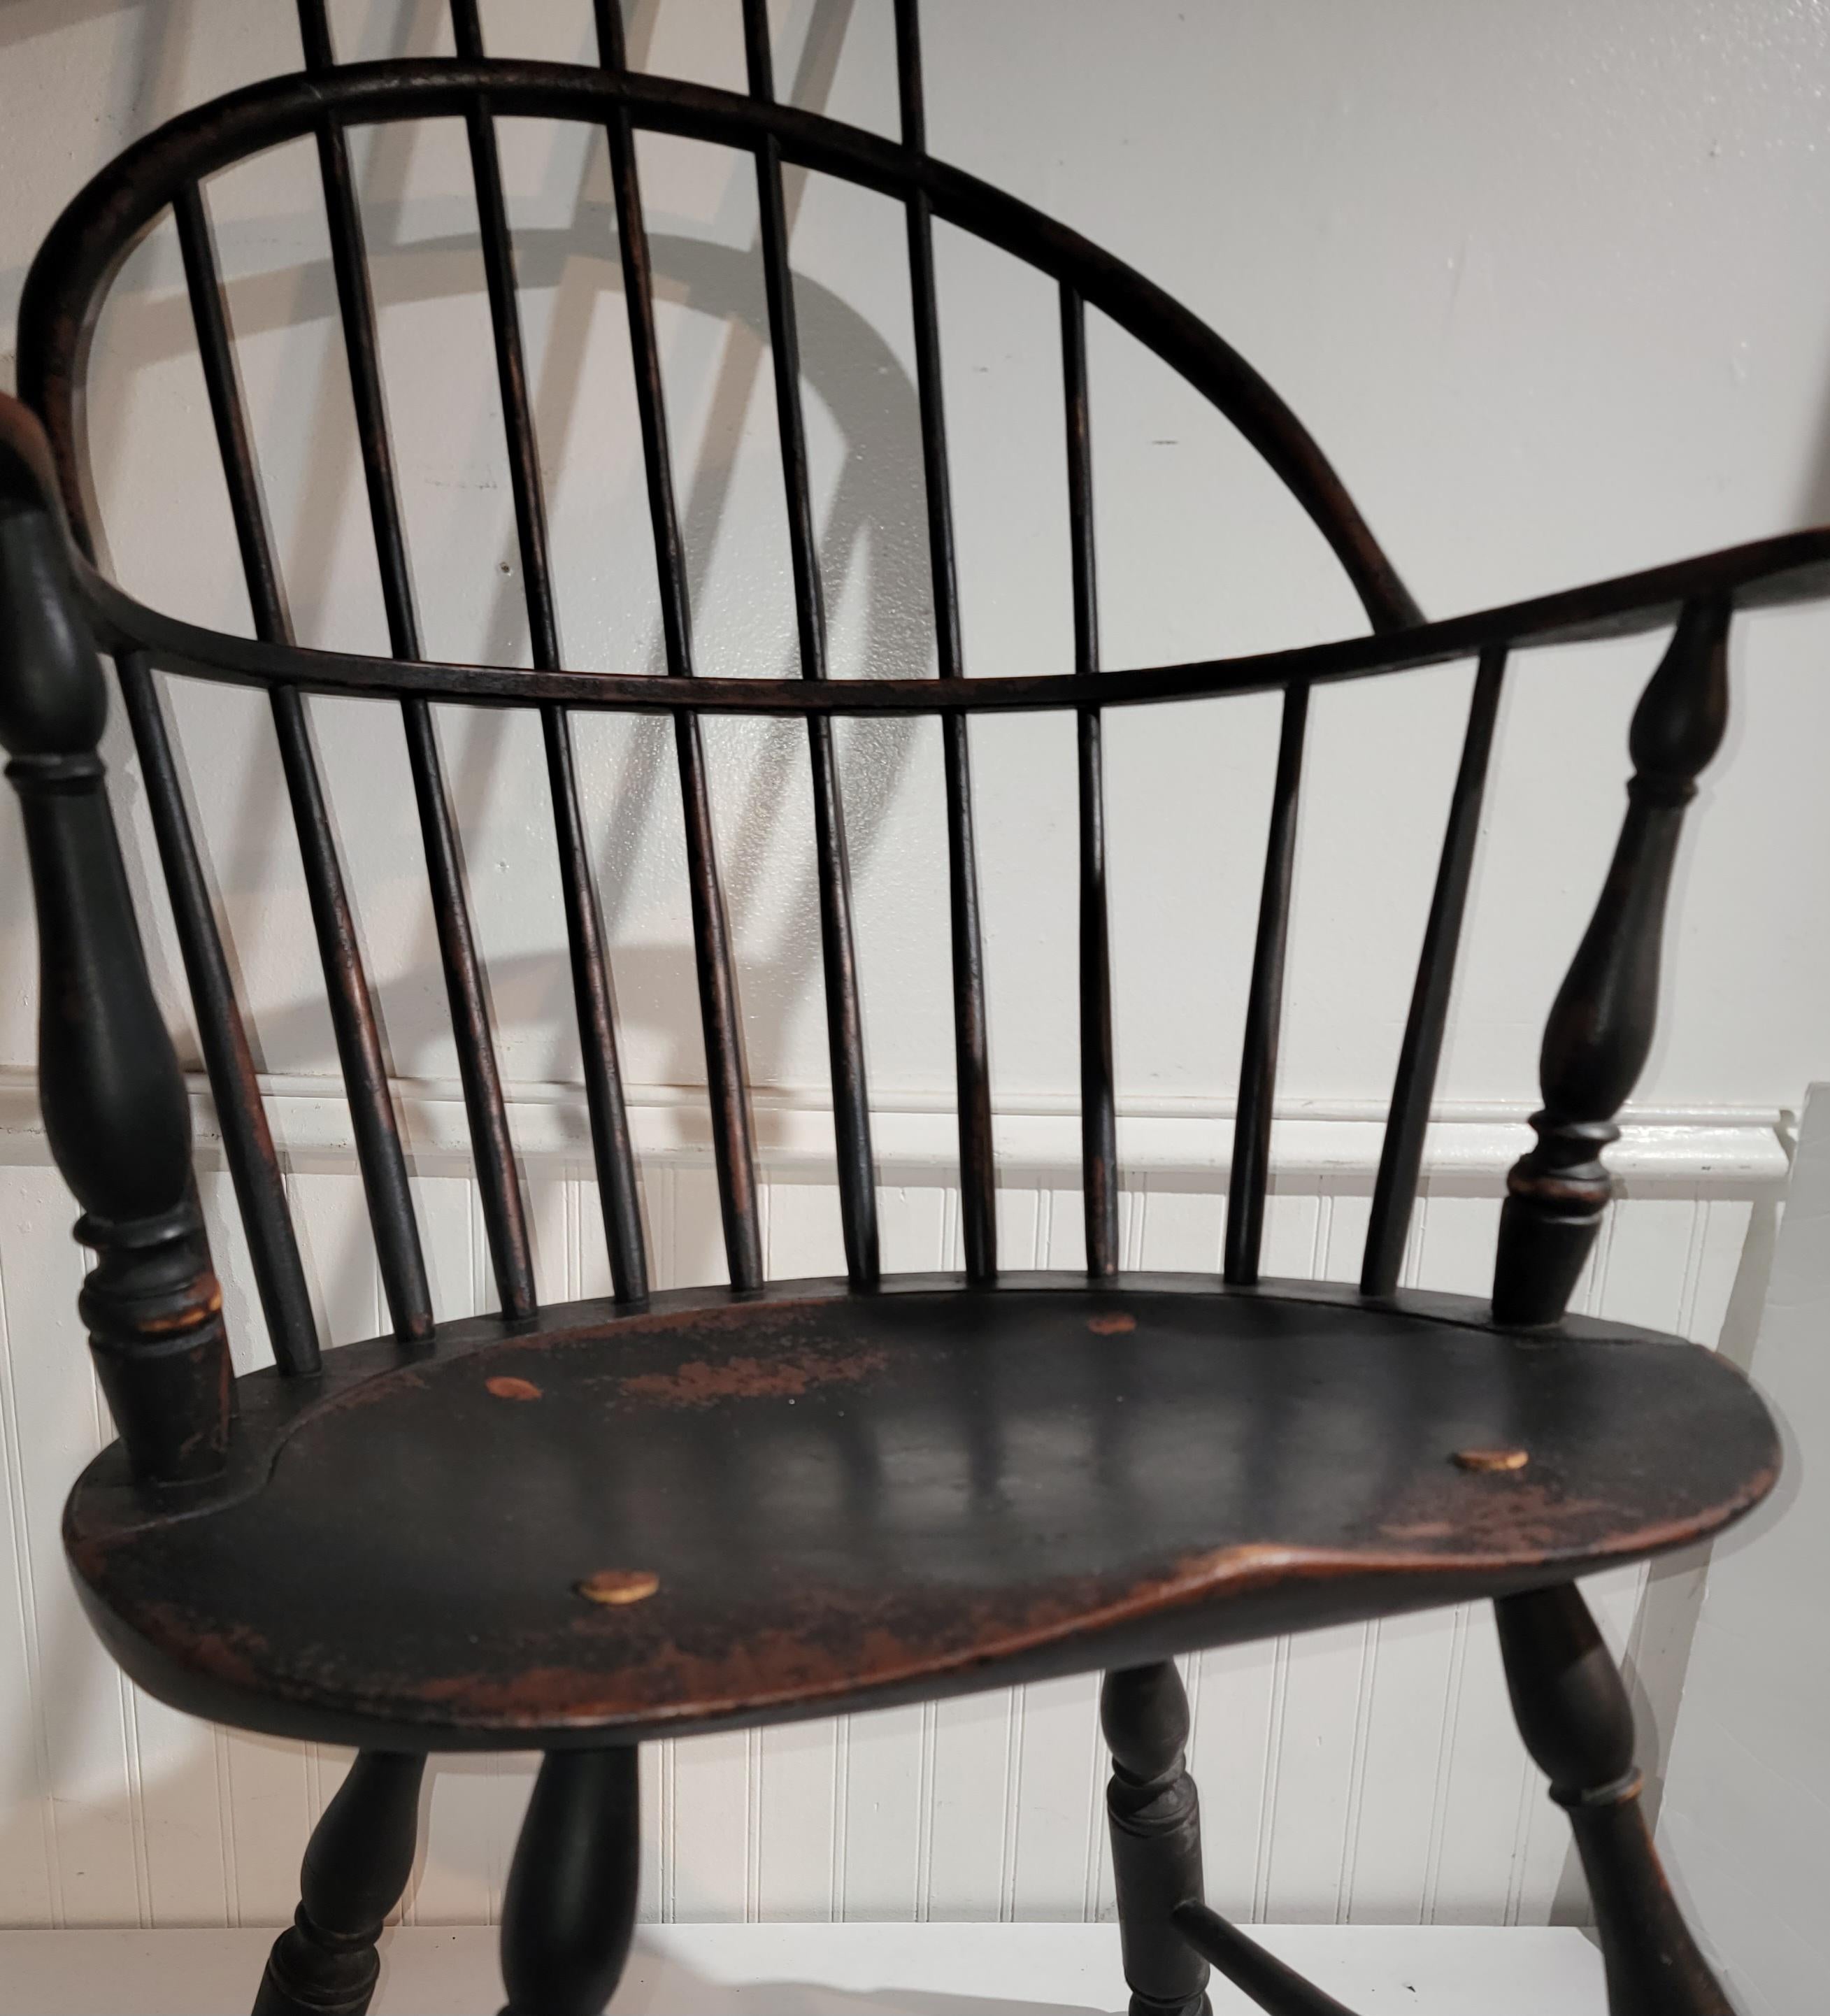 Dieses erstaunliche Original aus dem 18. Jahrhundert ist eine Kopie oder Reproduktion eines Windsor-Stuhls aus Neuengland. Diese auf der Bank handgefertigten Windsor-Stühle sehen genauso aus wie die antiken Originalstühle.